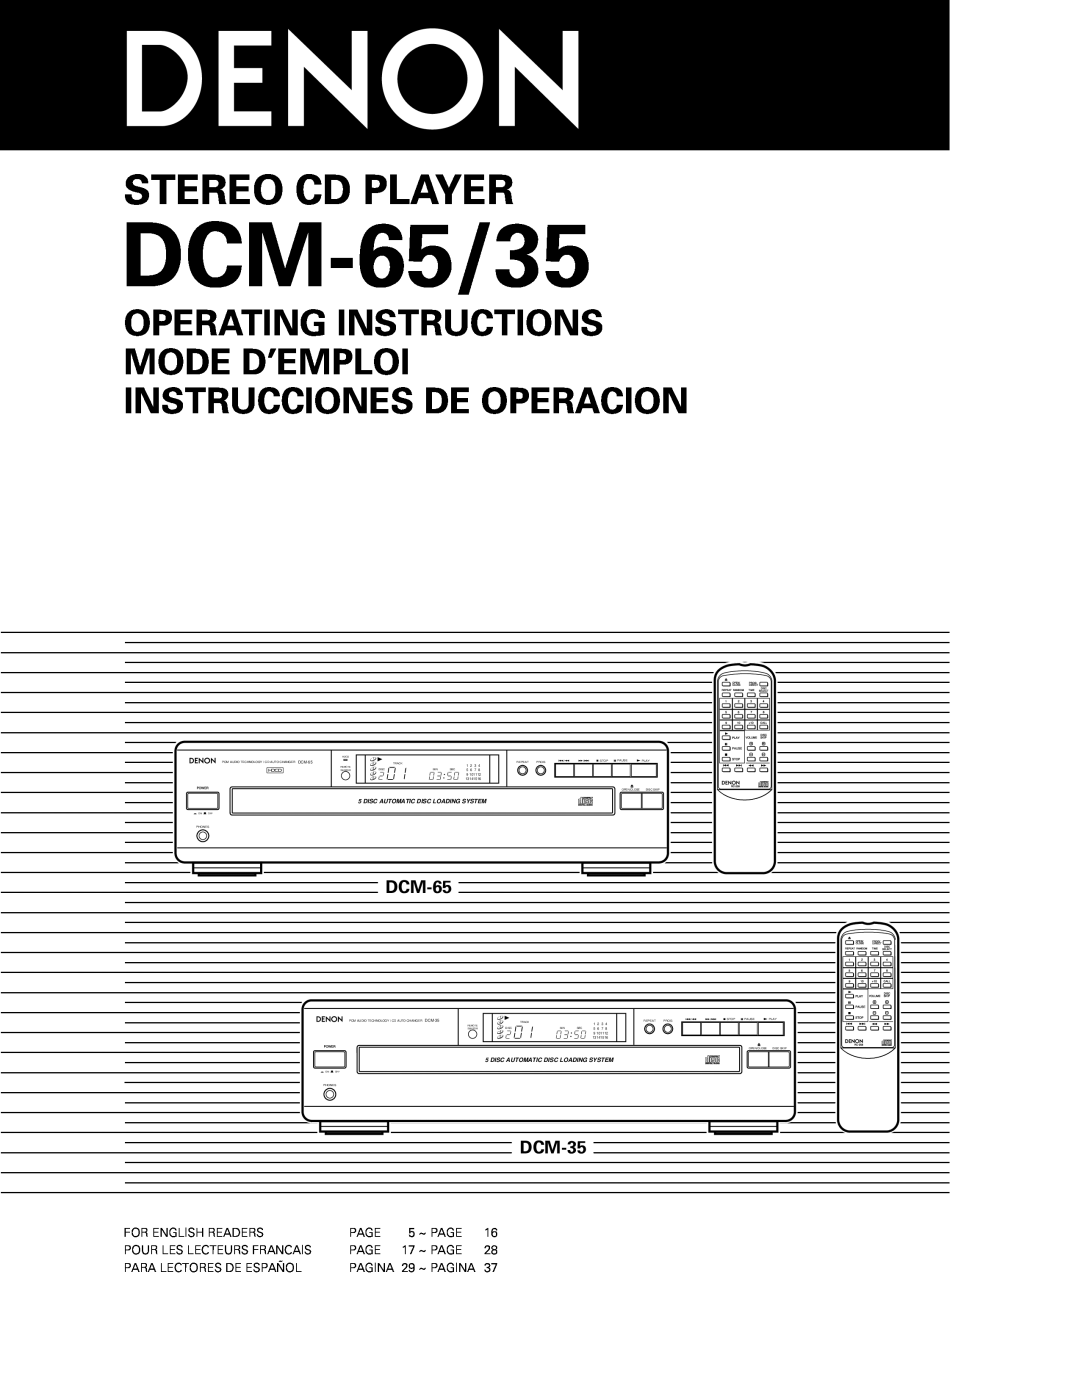 Denon DCM-65/35 manual Stereo Cd Player, Operating Instructions Mode D’Emploi, Instrucciones De Operacion, DCM-35 